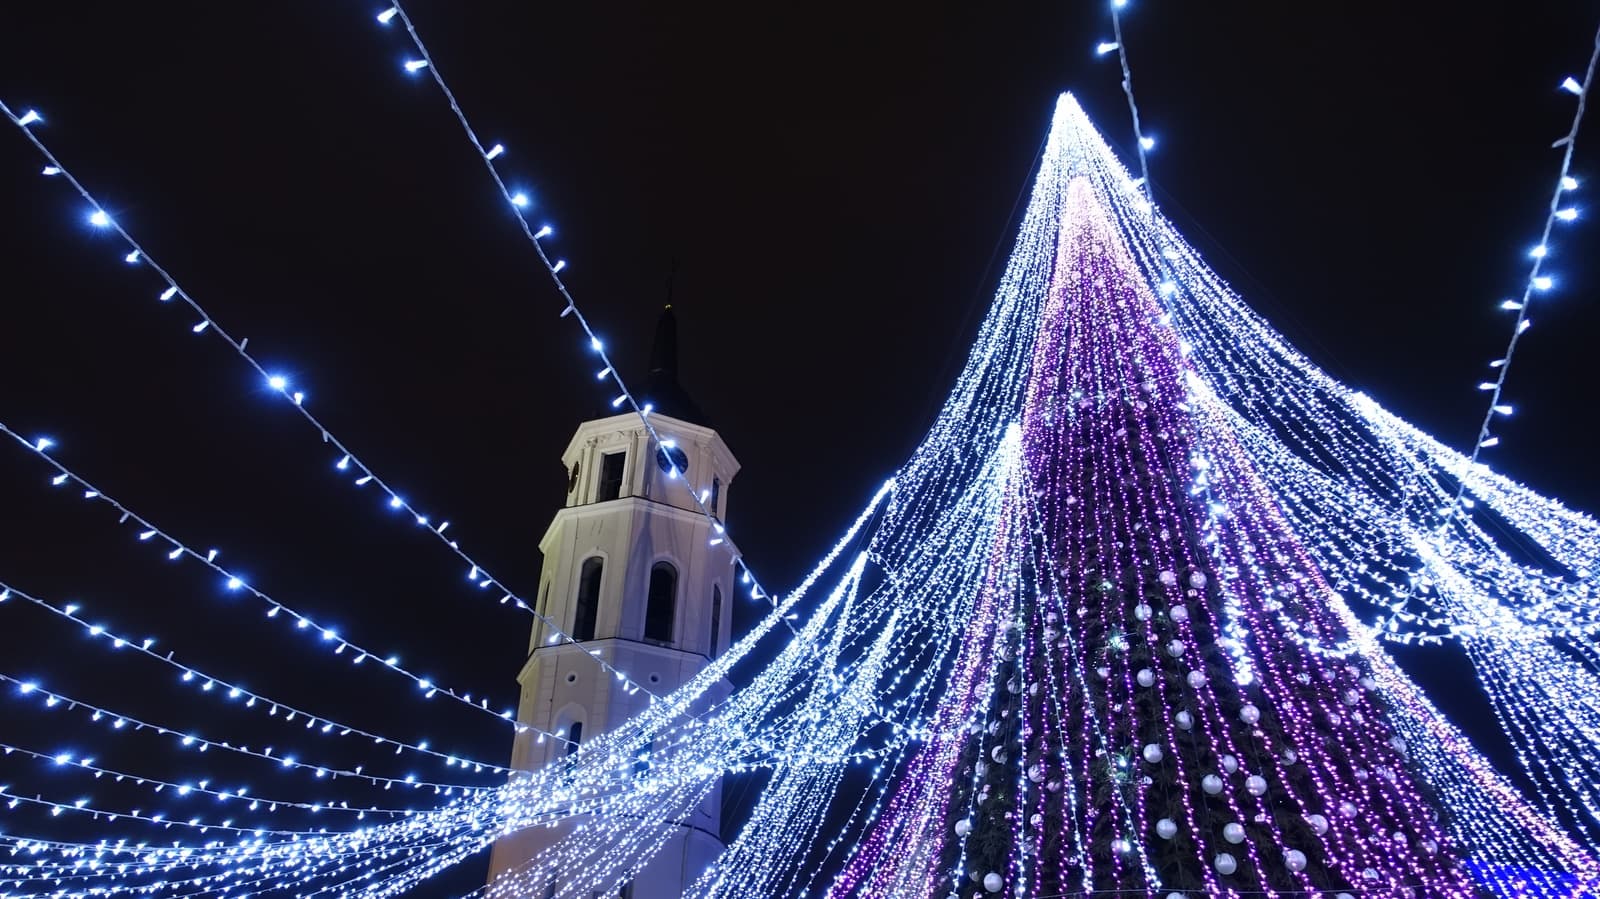 In Vilnius steht ein riesiger Weihnachtsbaum auf dem Marktplatz und sorgt für eine märchenhafte Atmosphäre